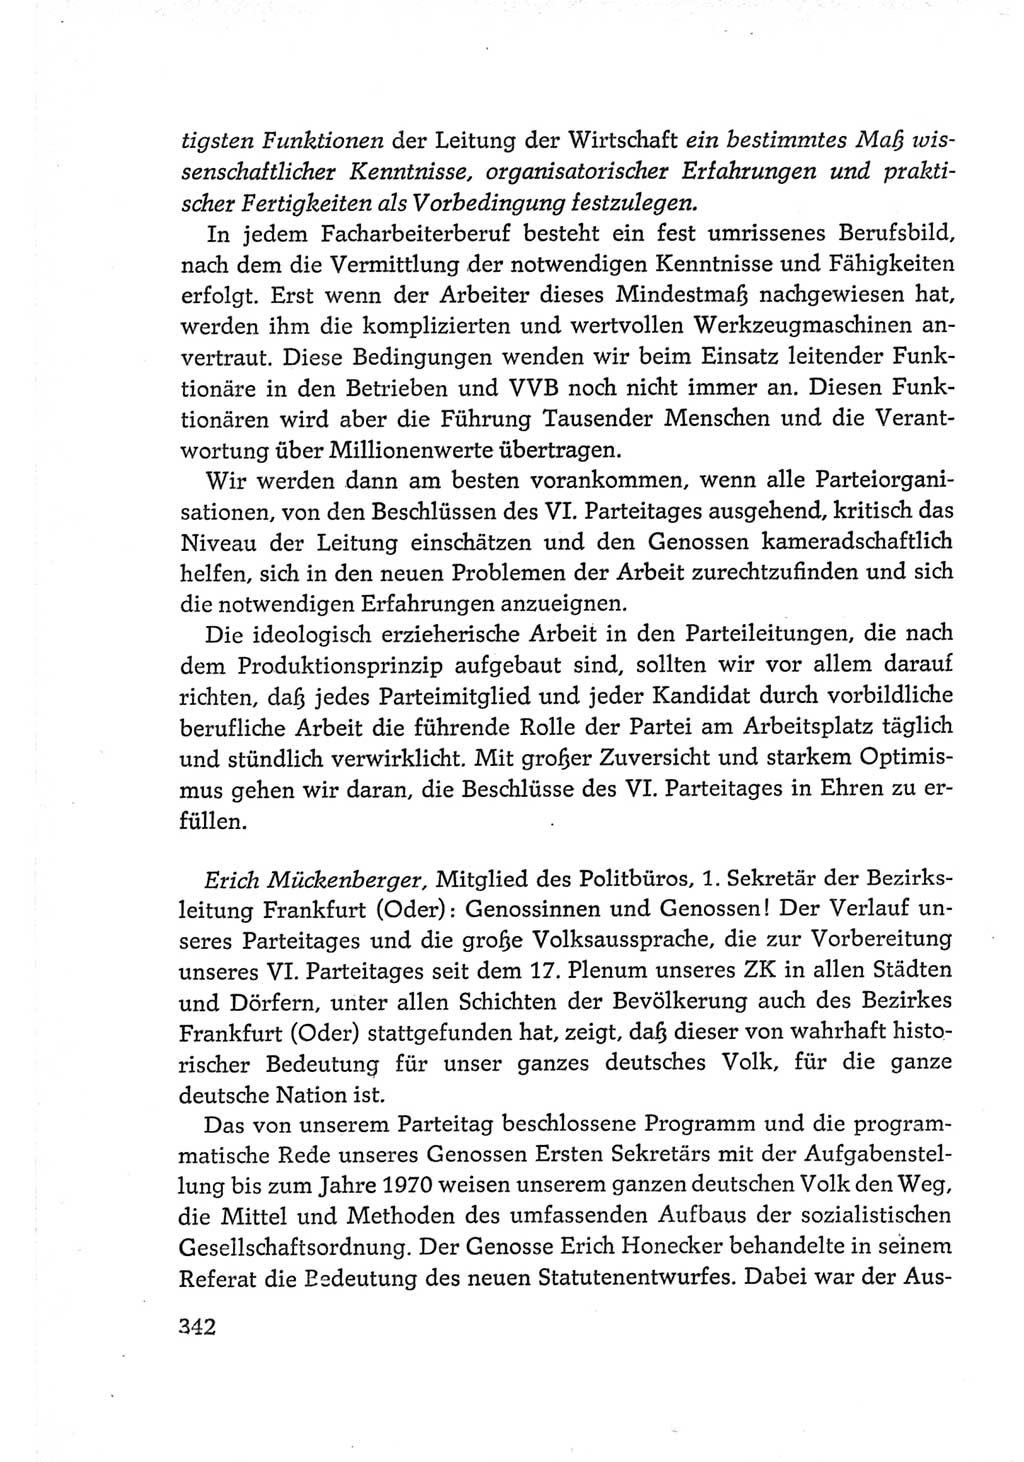 Protokoll der Verhandlungen des Ⅵ. Parteitages der Sozialistischen Einheitspartei Deutschlands (SED) [Deutsche Demokratische Republik (DDR)] 1963, Band Ⅲ, Seite 342 (Prot. Verh. Ⅵ. PT SED DDR 1963, Bd. Ⅲ, S. 342)